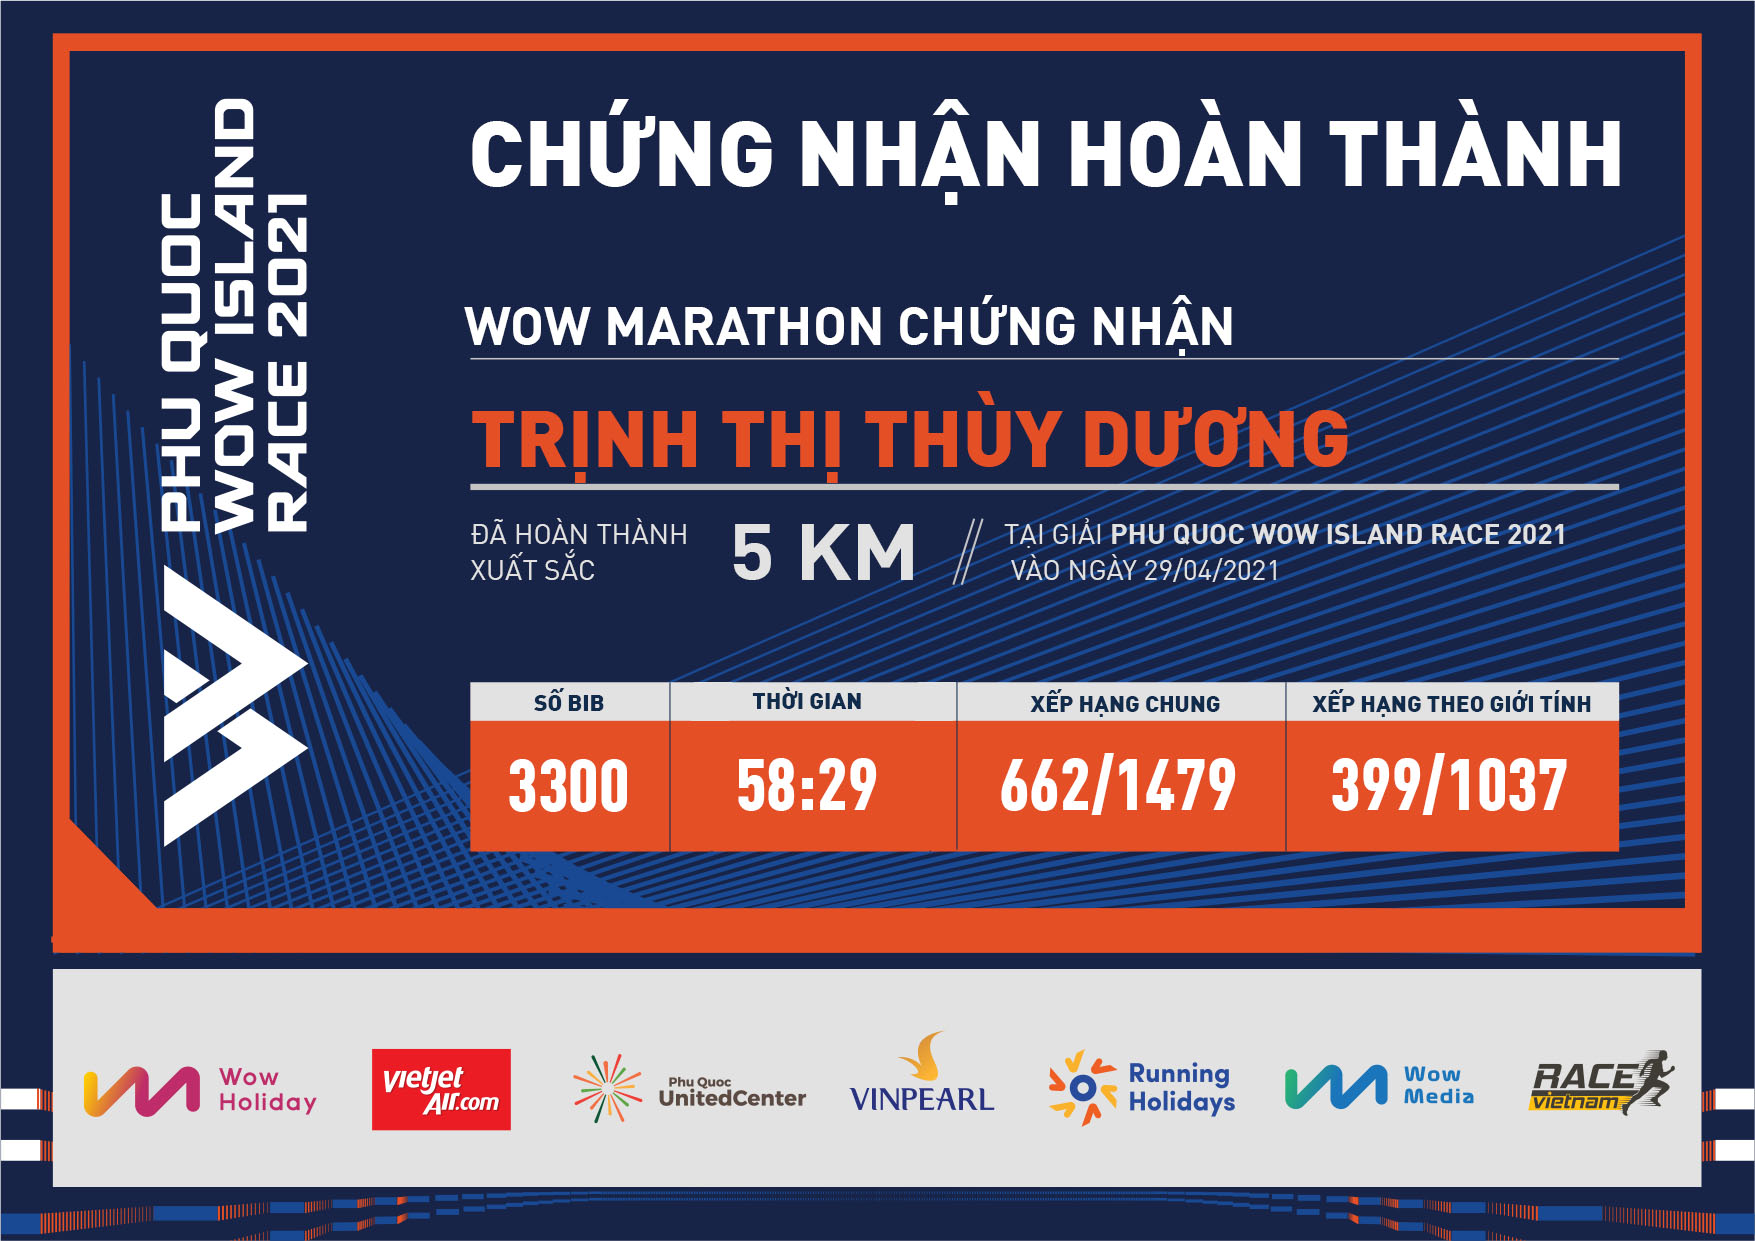 3300 - Trịnh Thị Thùy Dương